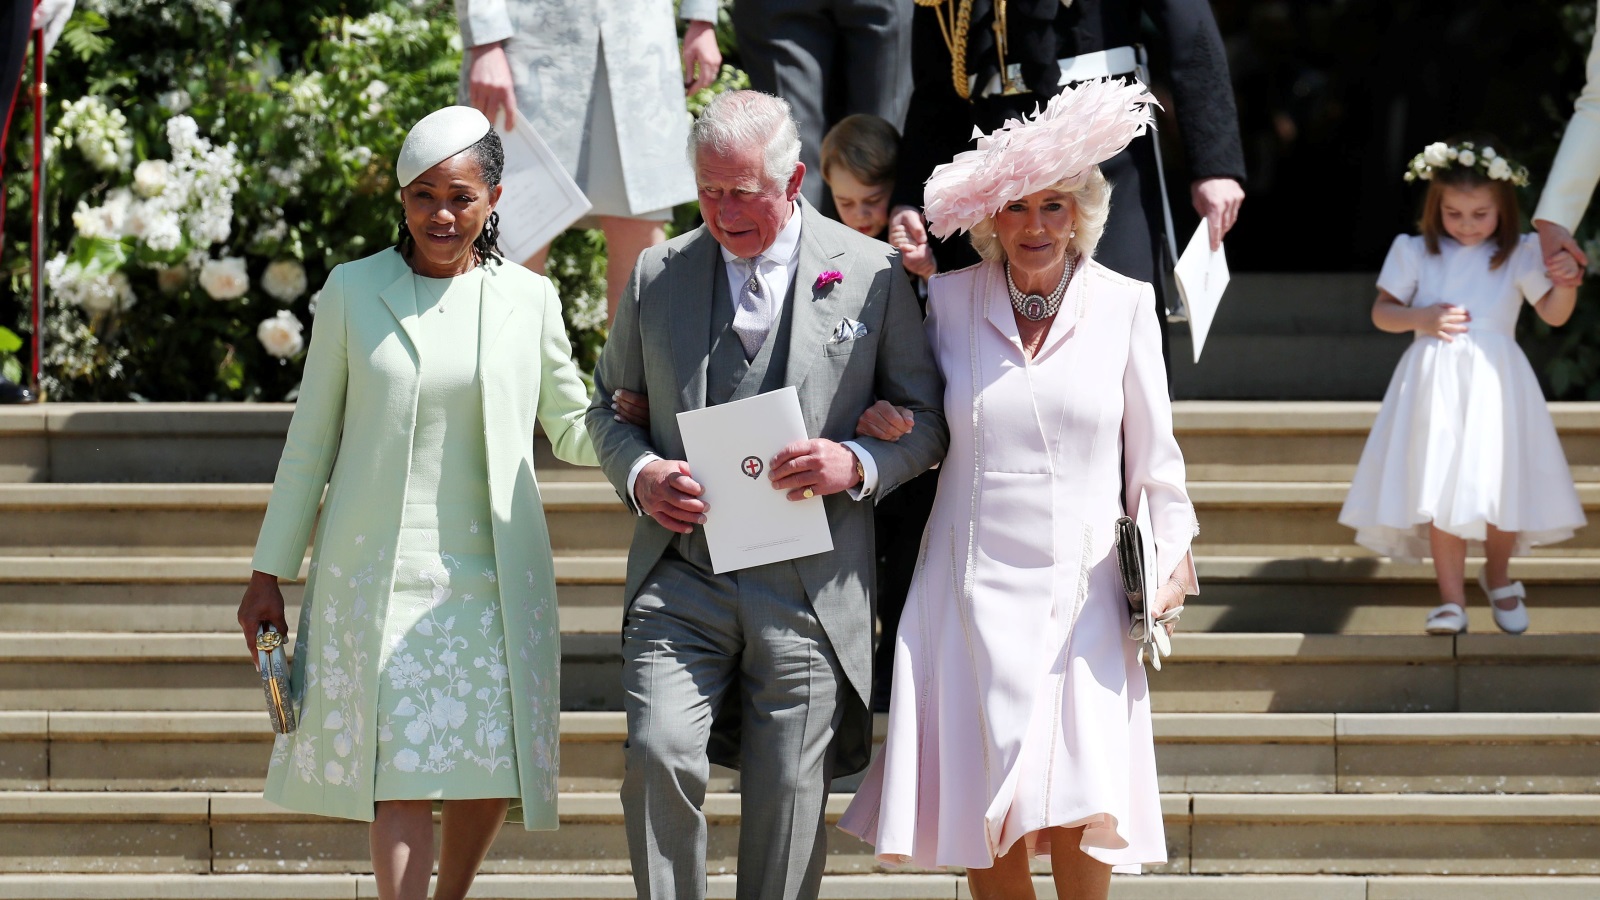 دوريا والدة العروس (يسار) مع أفراد من العائلة الملكية (رويترز)